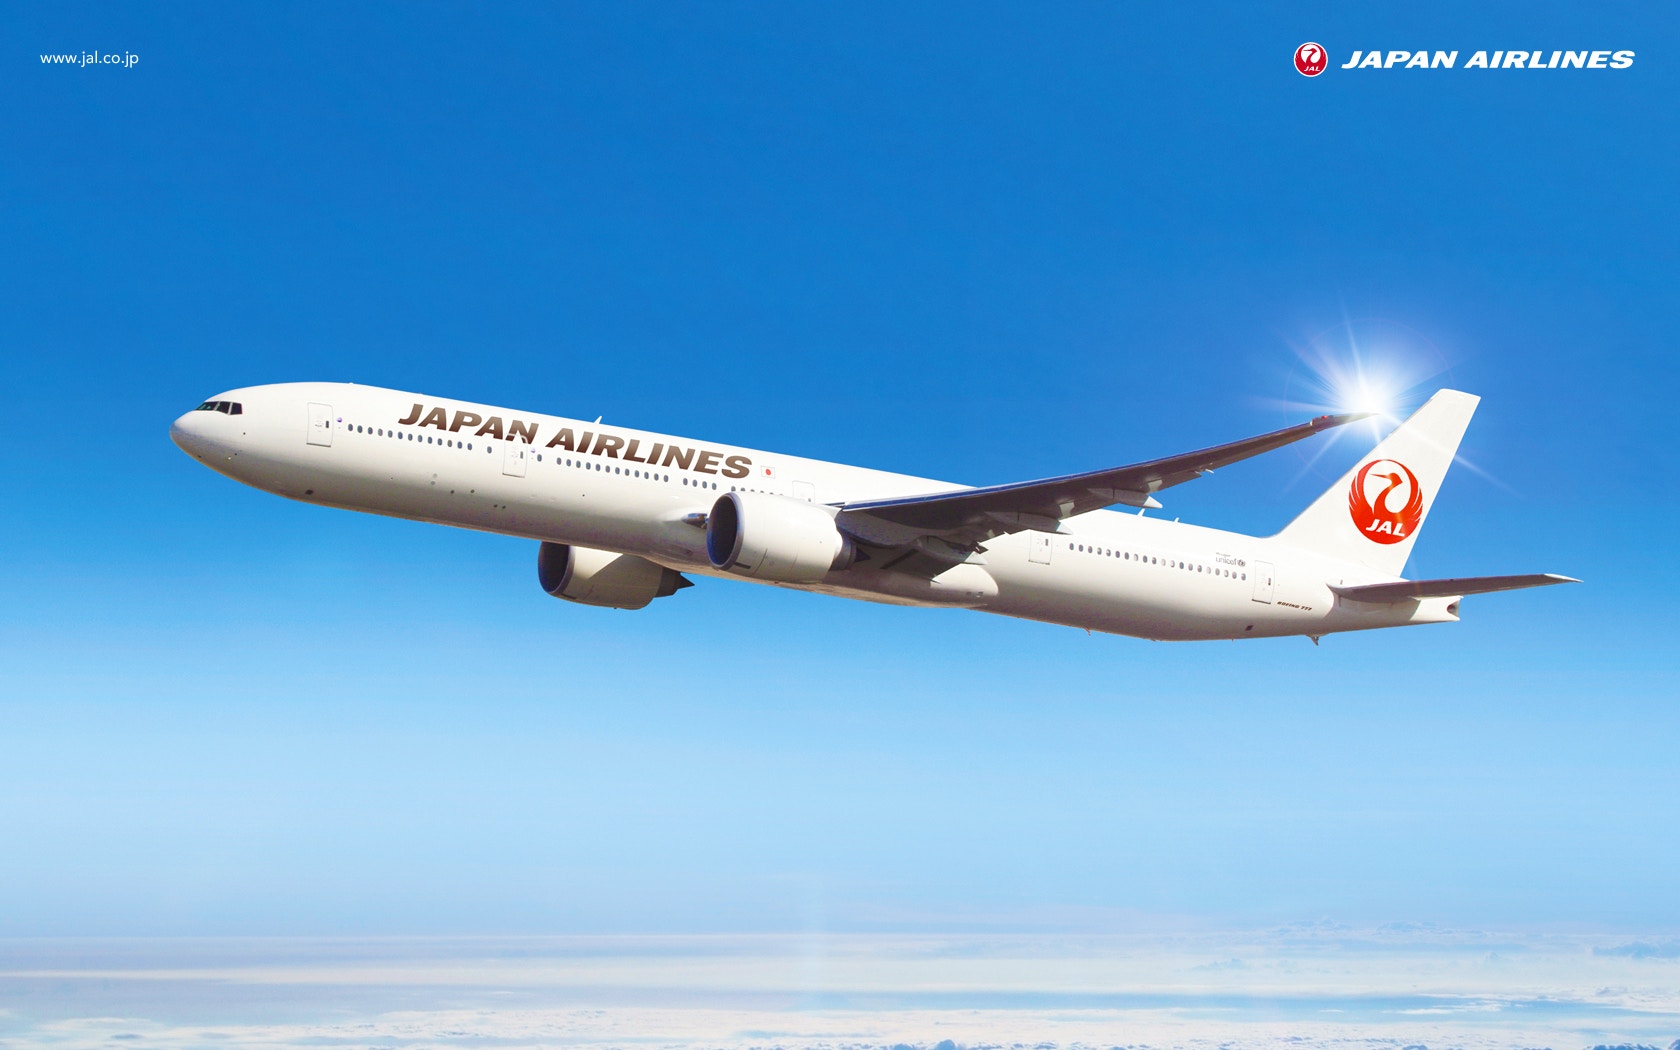 日航jal送十萬張日本機票 每日網上限量搶留意搶飛方法及時間